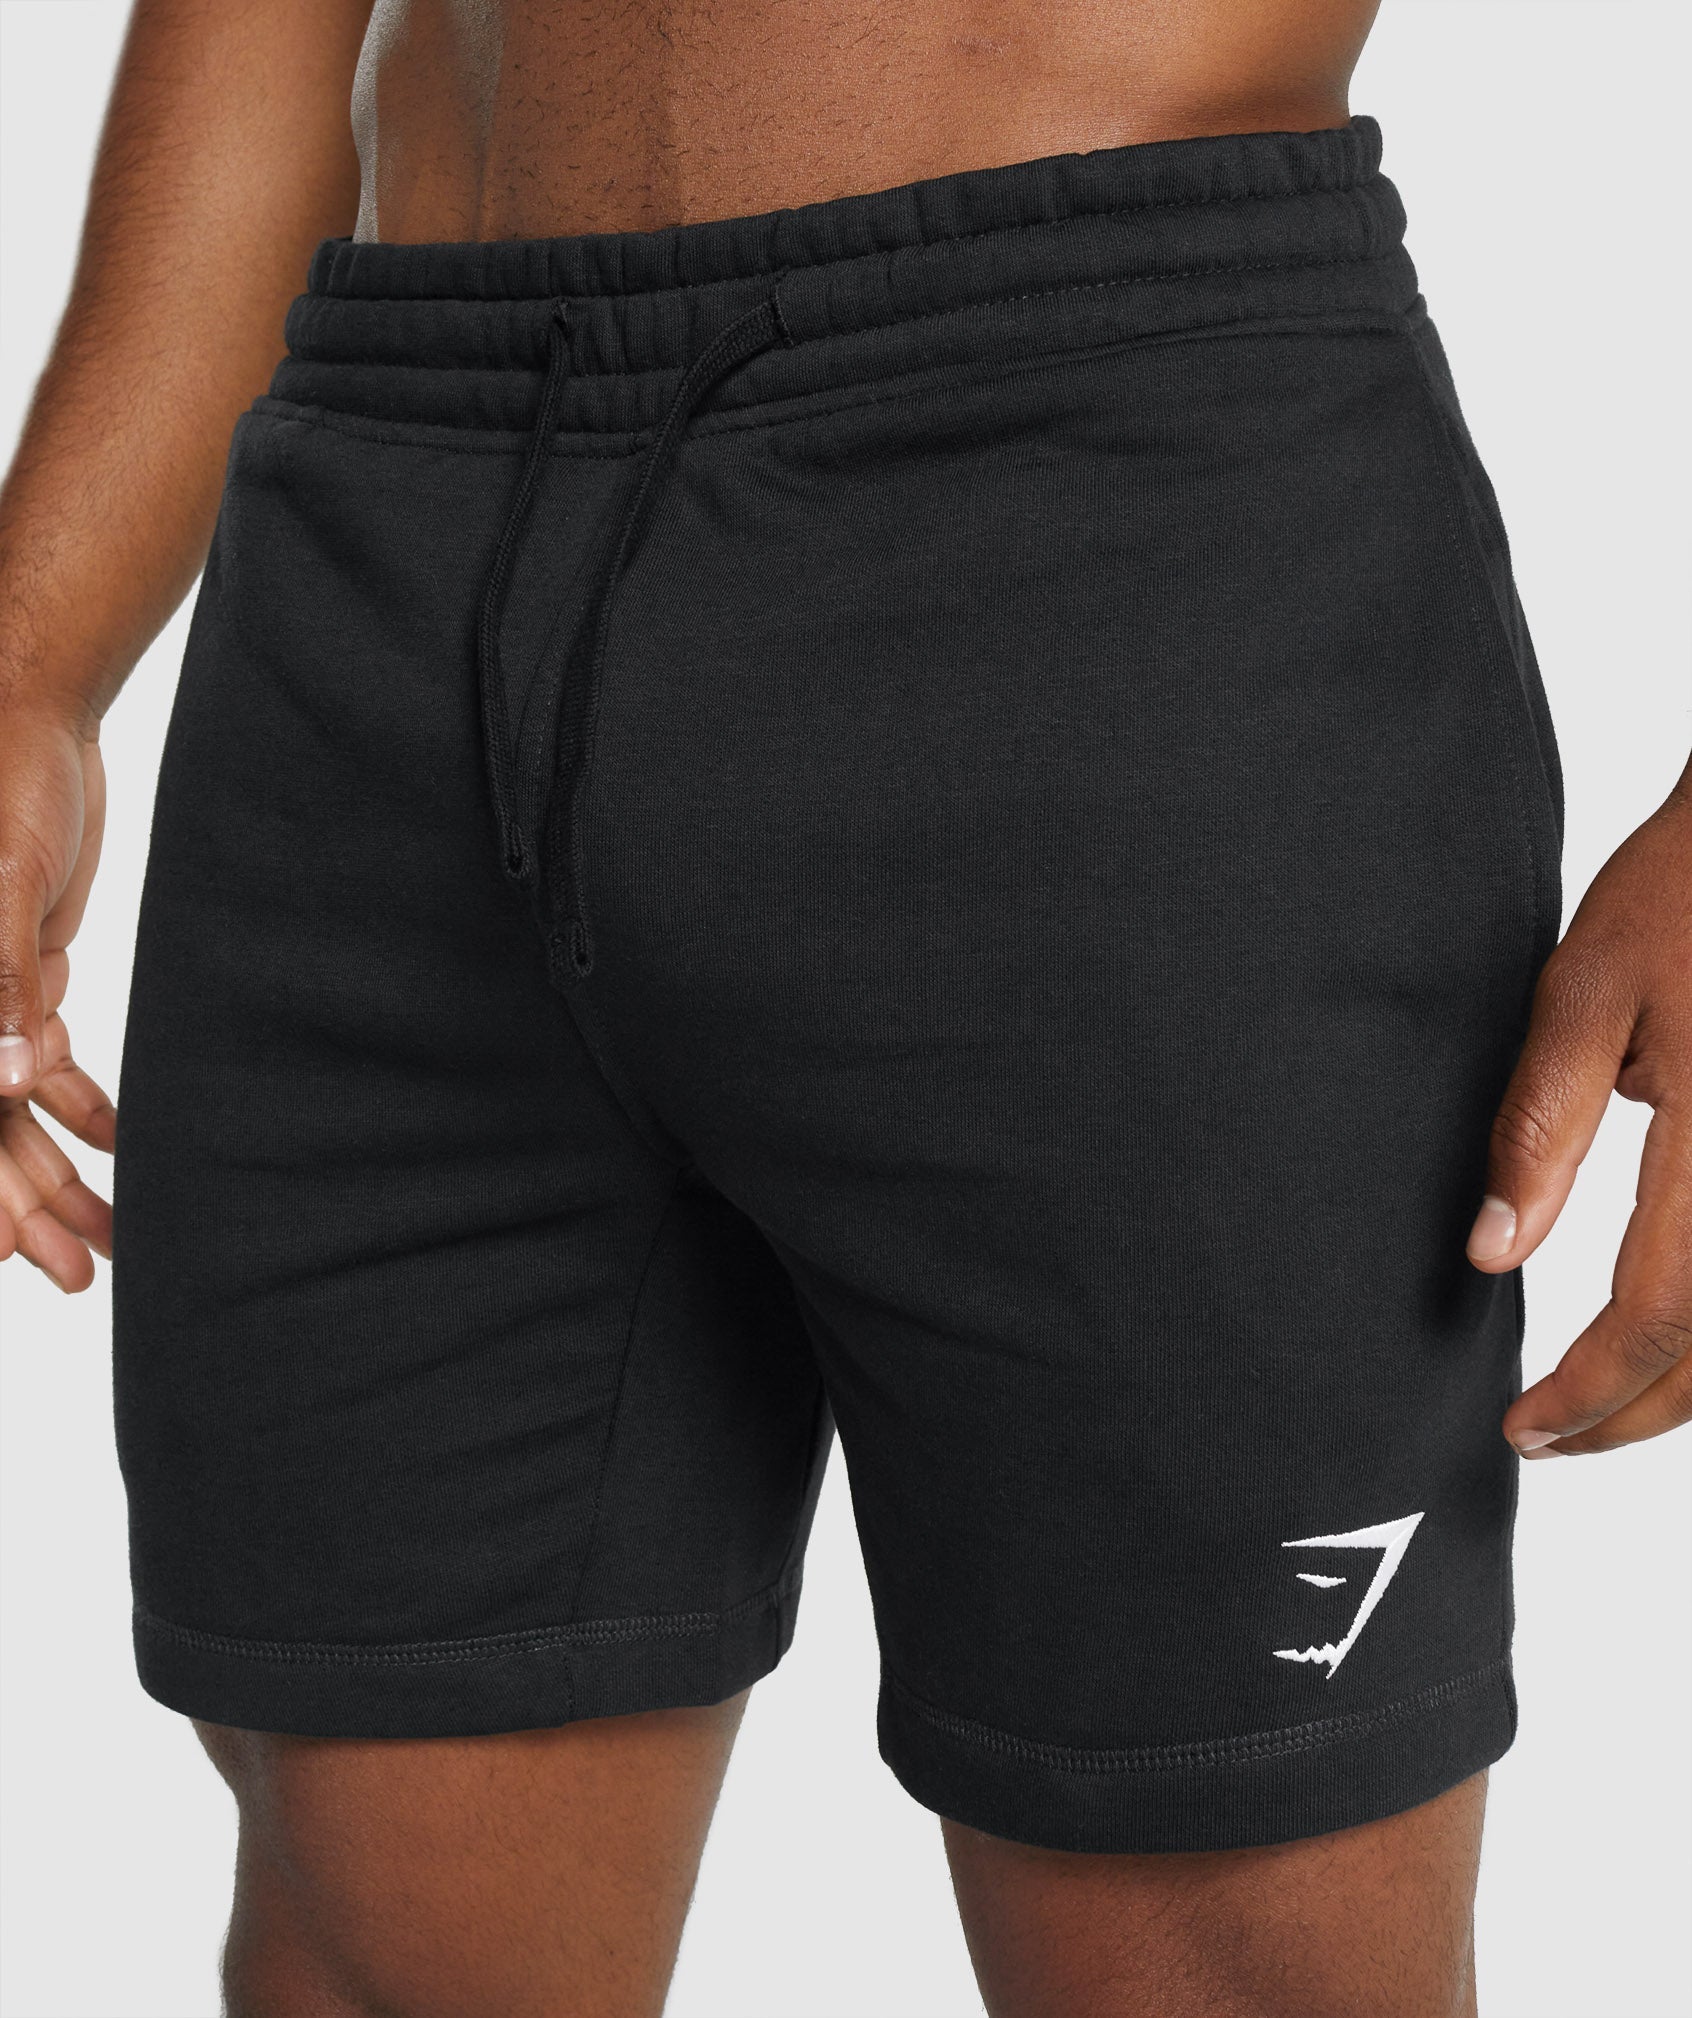 Gymshark Crest Shorts - Black